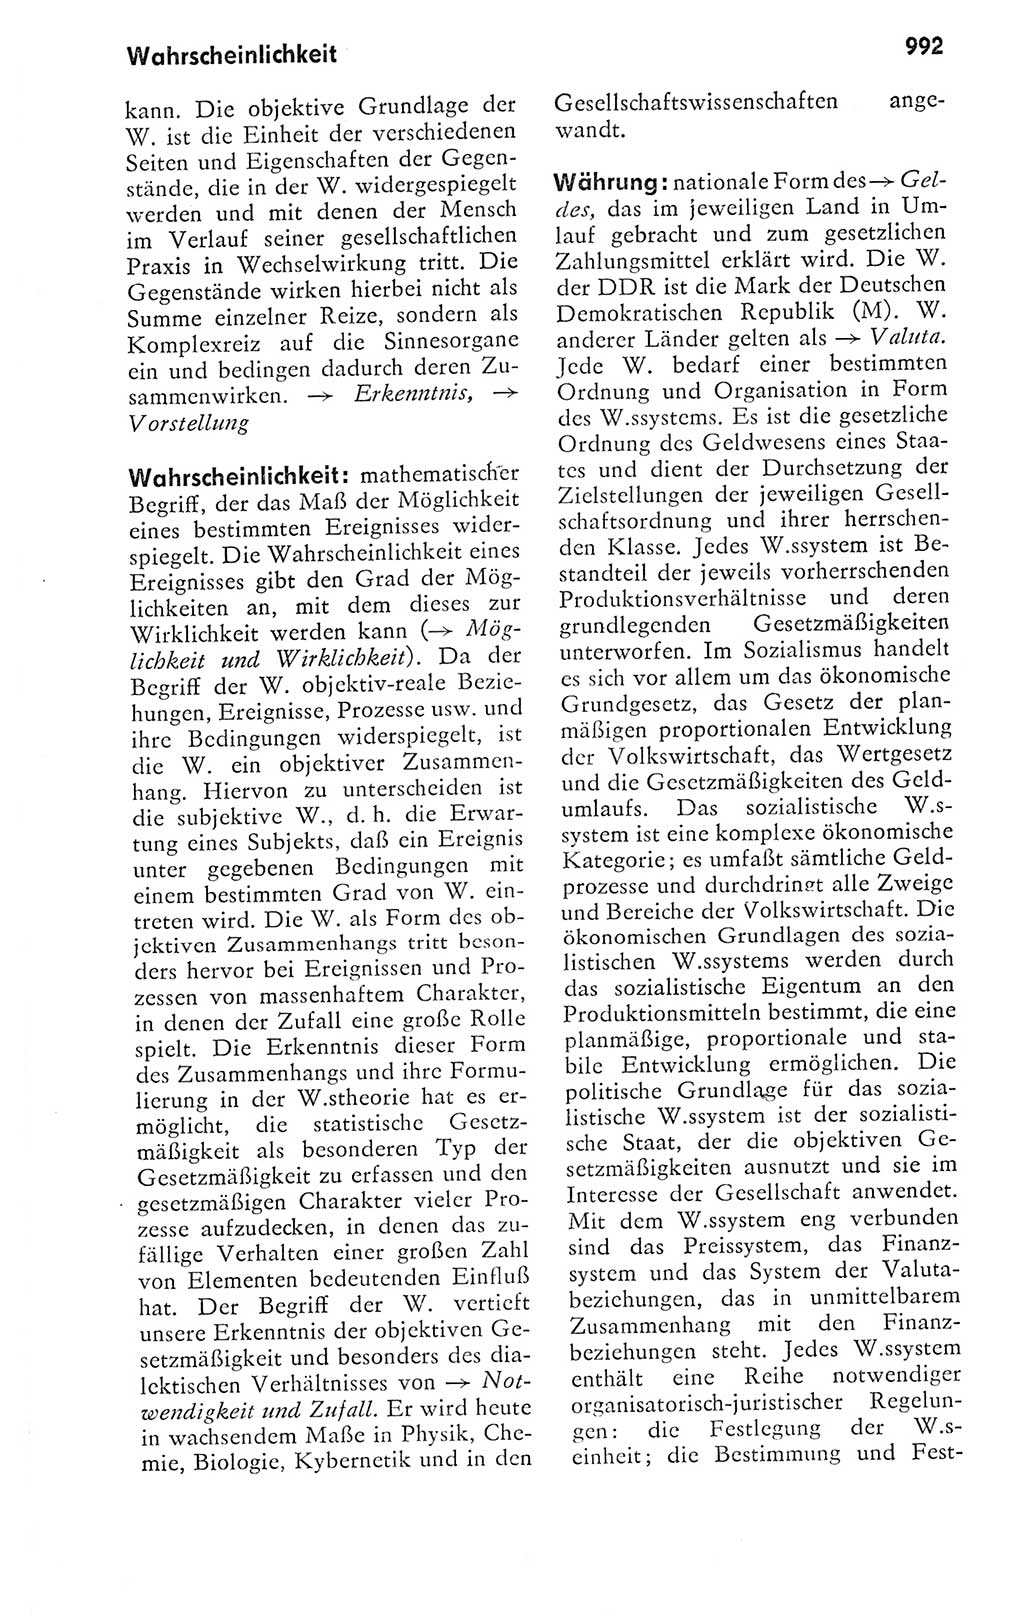 Kleines politisches Wörterbuch [Deutsche Demokratische Republik (DDR)] 1978, Seite 992 (Kl. pol. Wb. DDR 1978, S. 992)